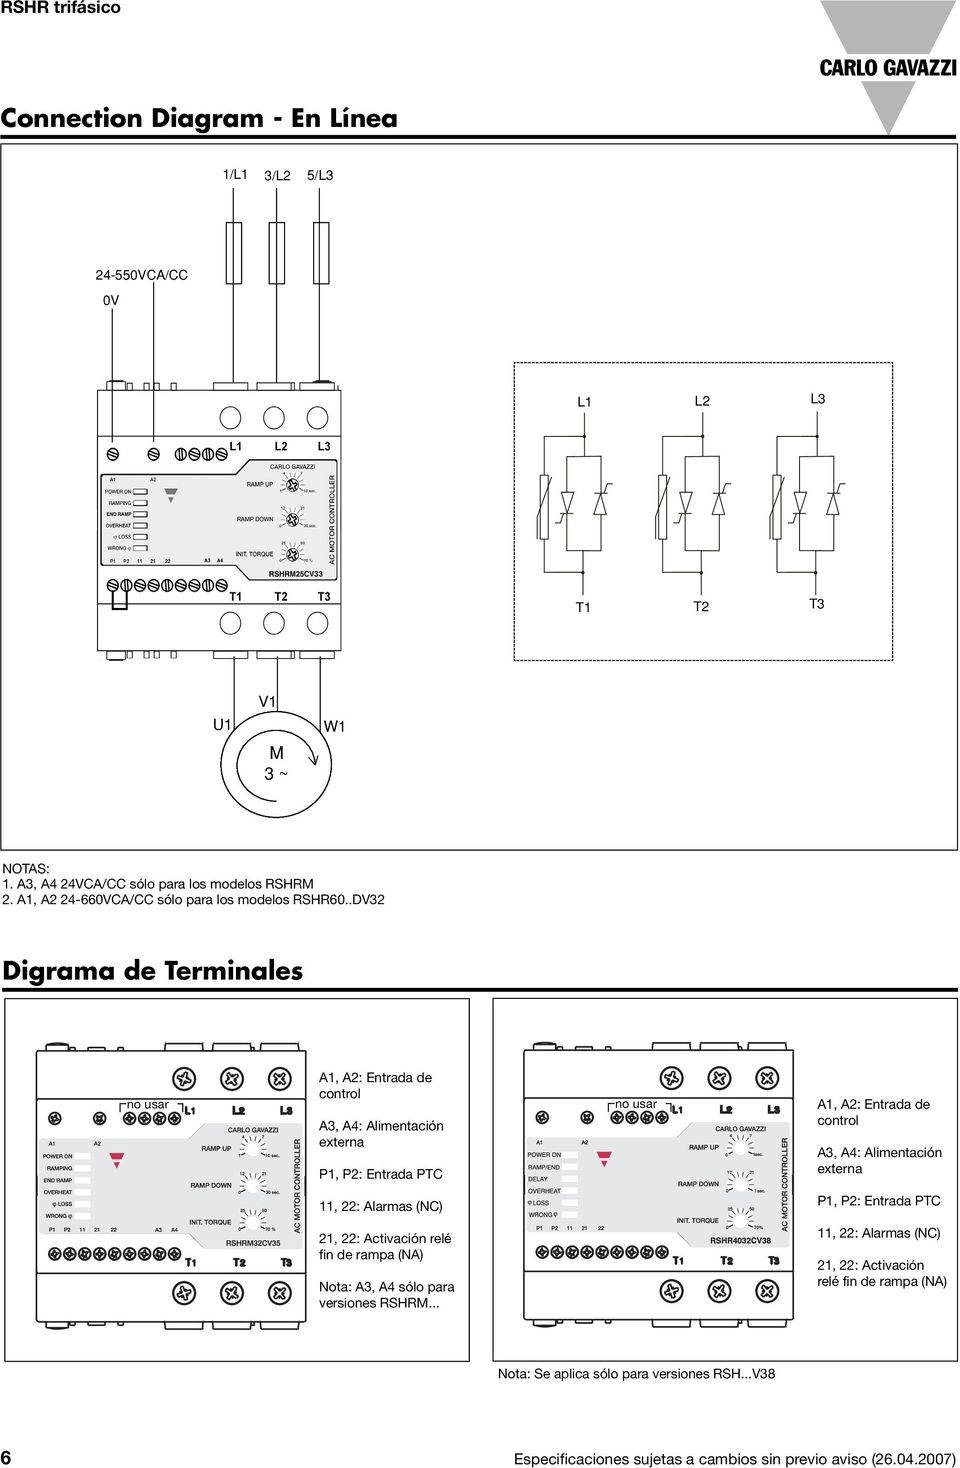 .DV32 Digrama de Terminales no usar A1, A2: Entrada de control A3, A4: Alimentación externa P1, P2: Entrada PTC no usar A1, A2: Entrada de control A3, A4: Alimentación